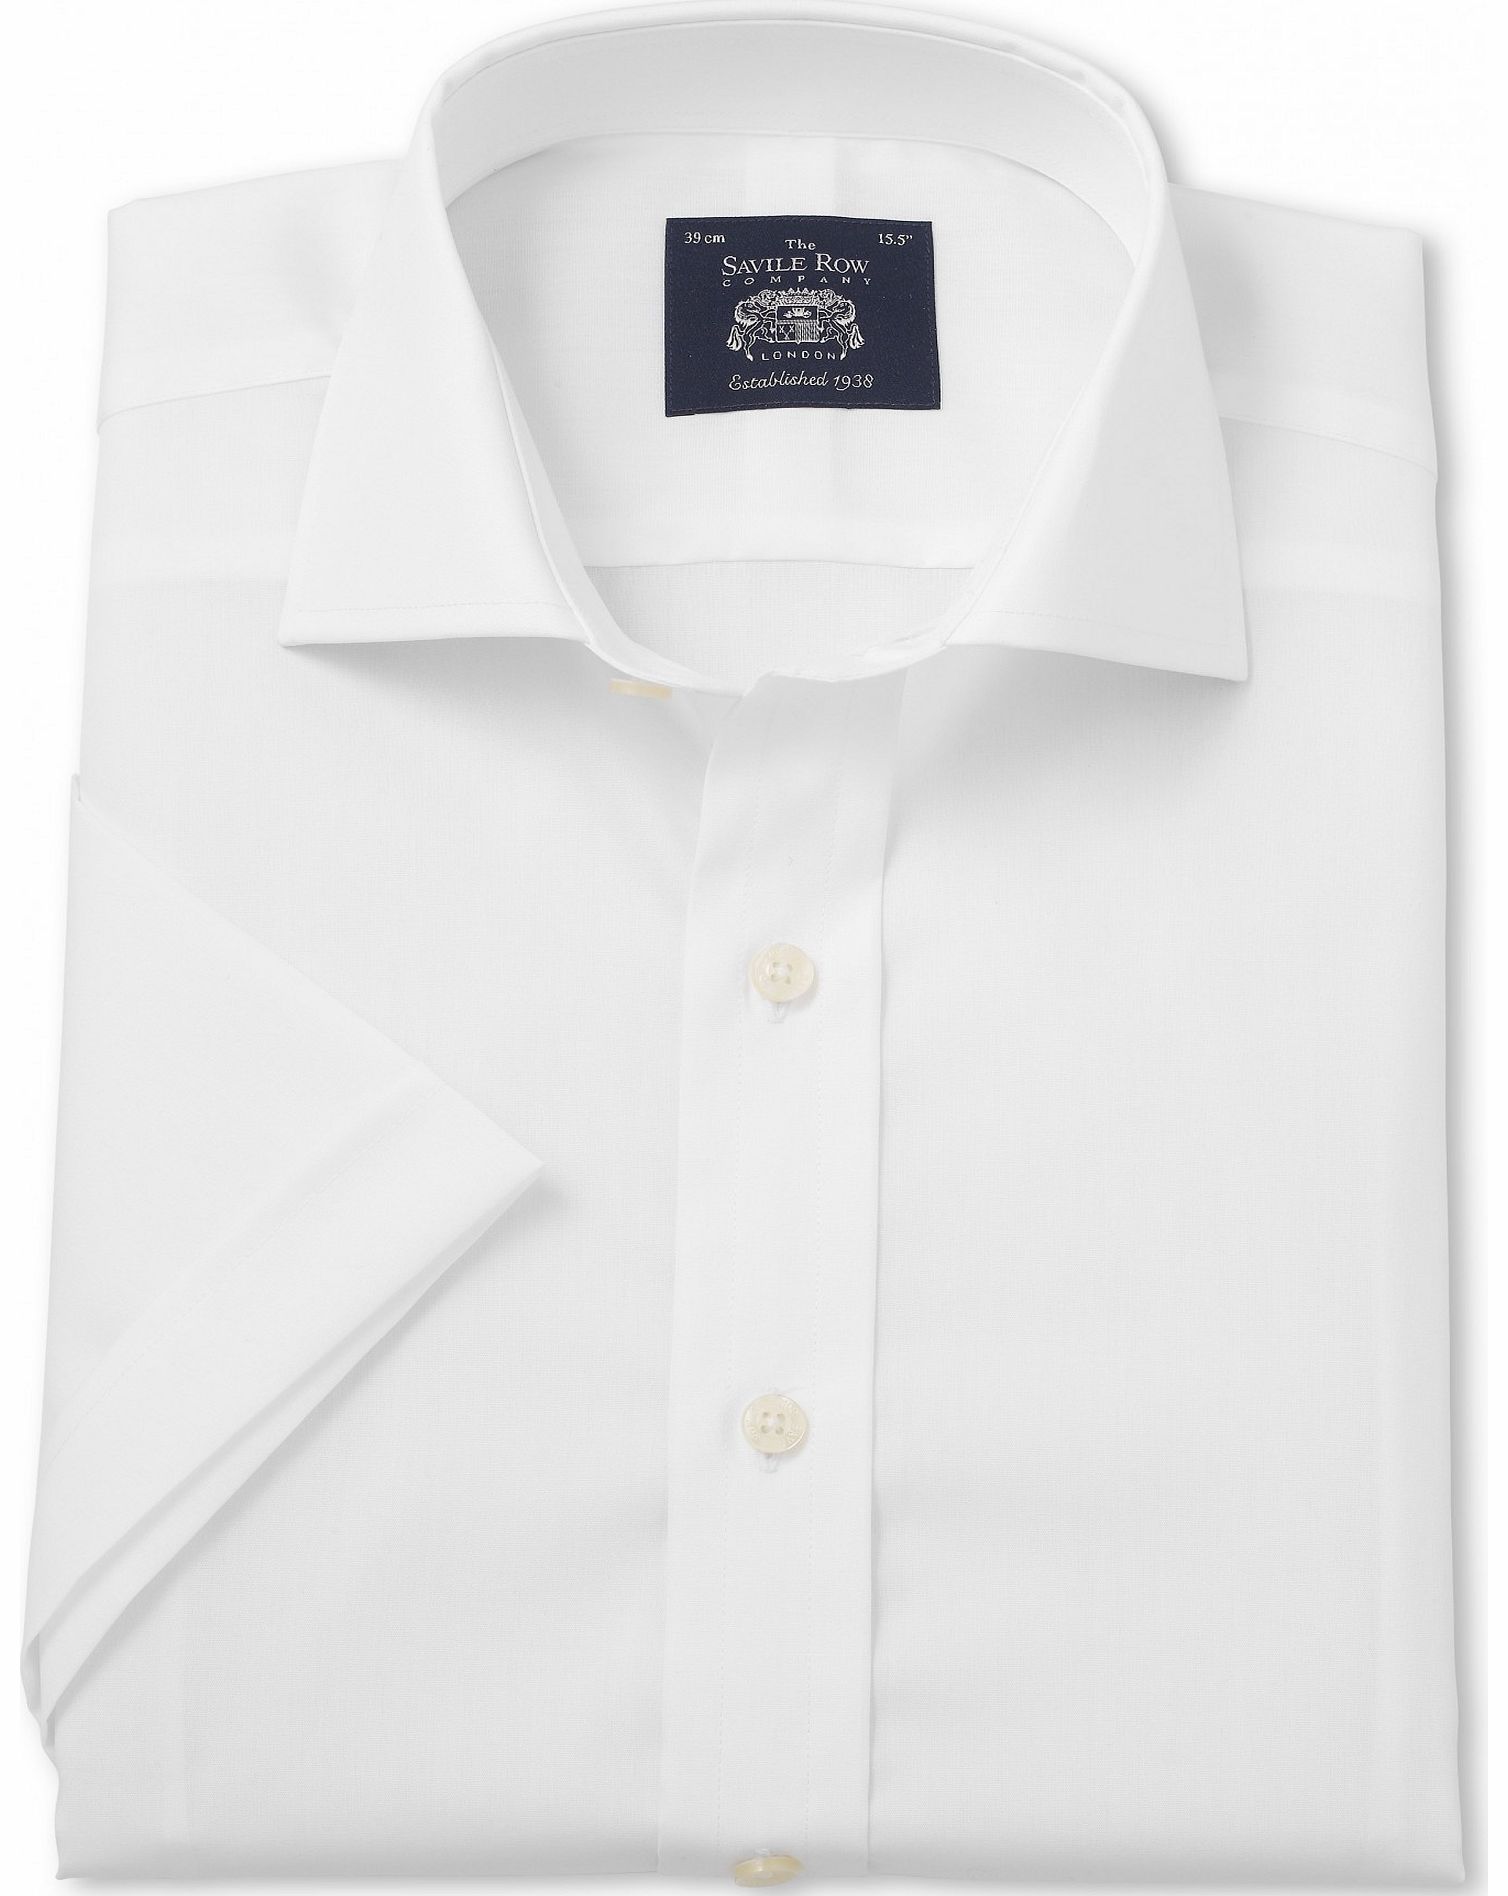 Savile Row Company White Slim Fit Short Sleeve Shirt 17 1/2`` Short